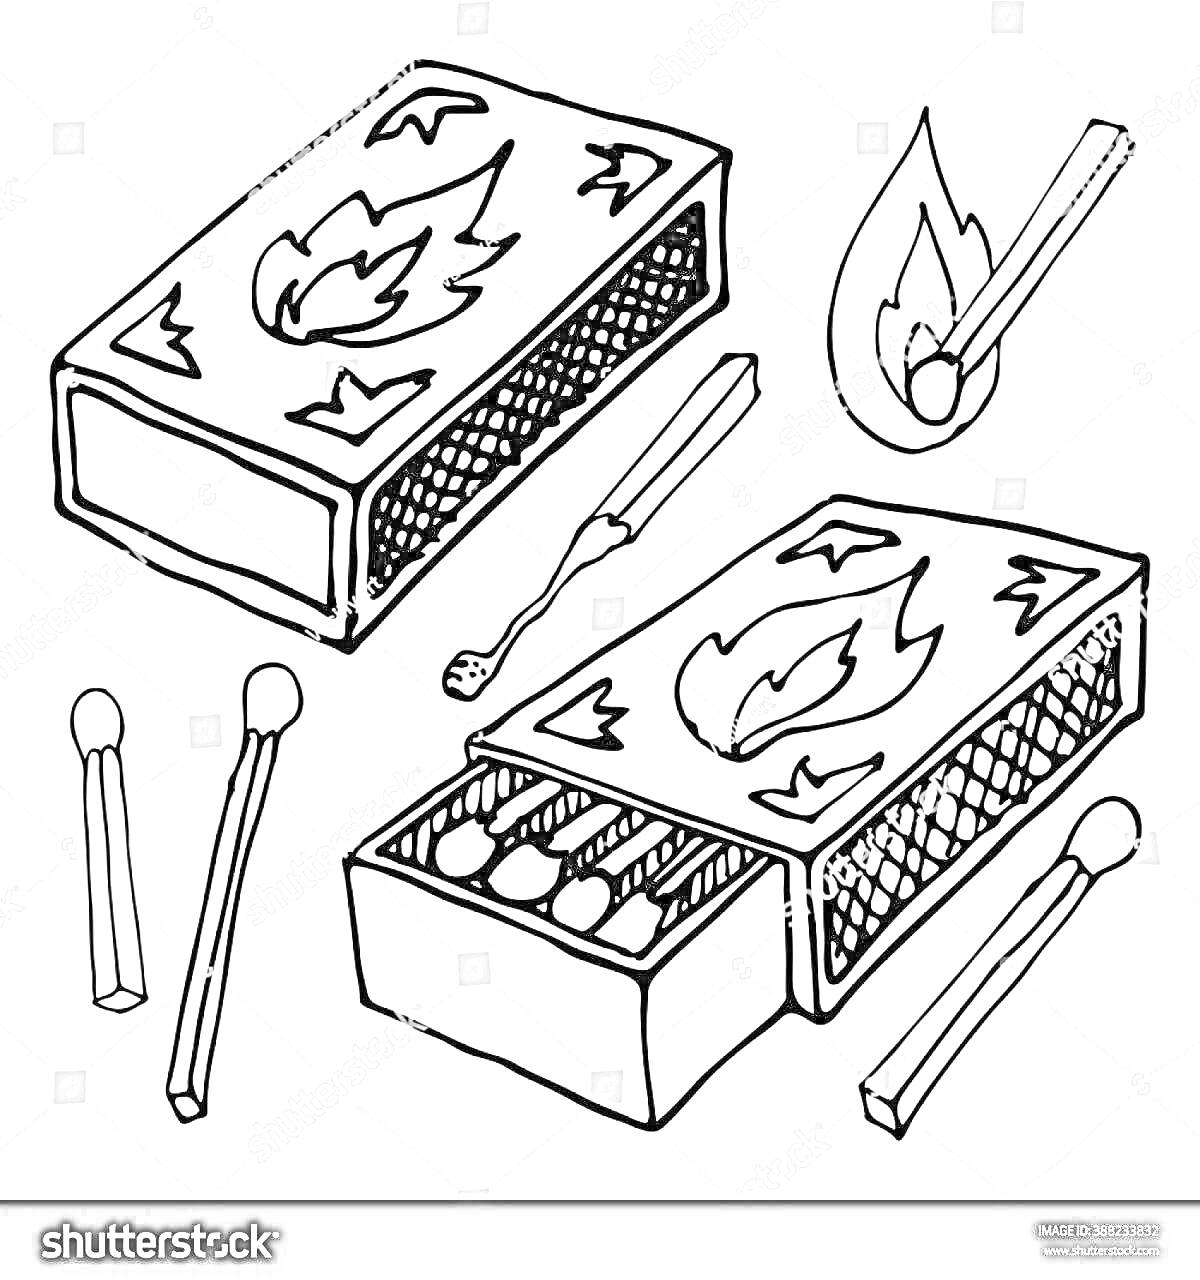 Коробок спичек с изображением огня, спички внутри коробка и отдельно, горящая спичка